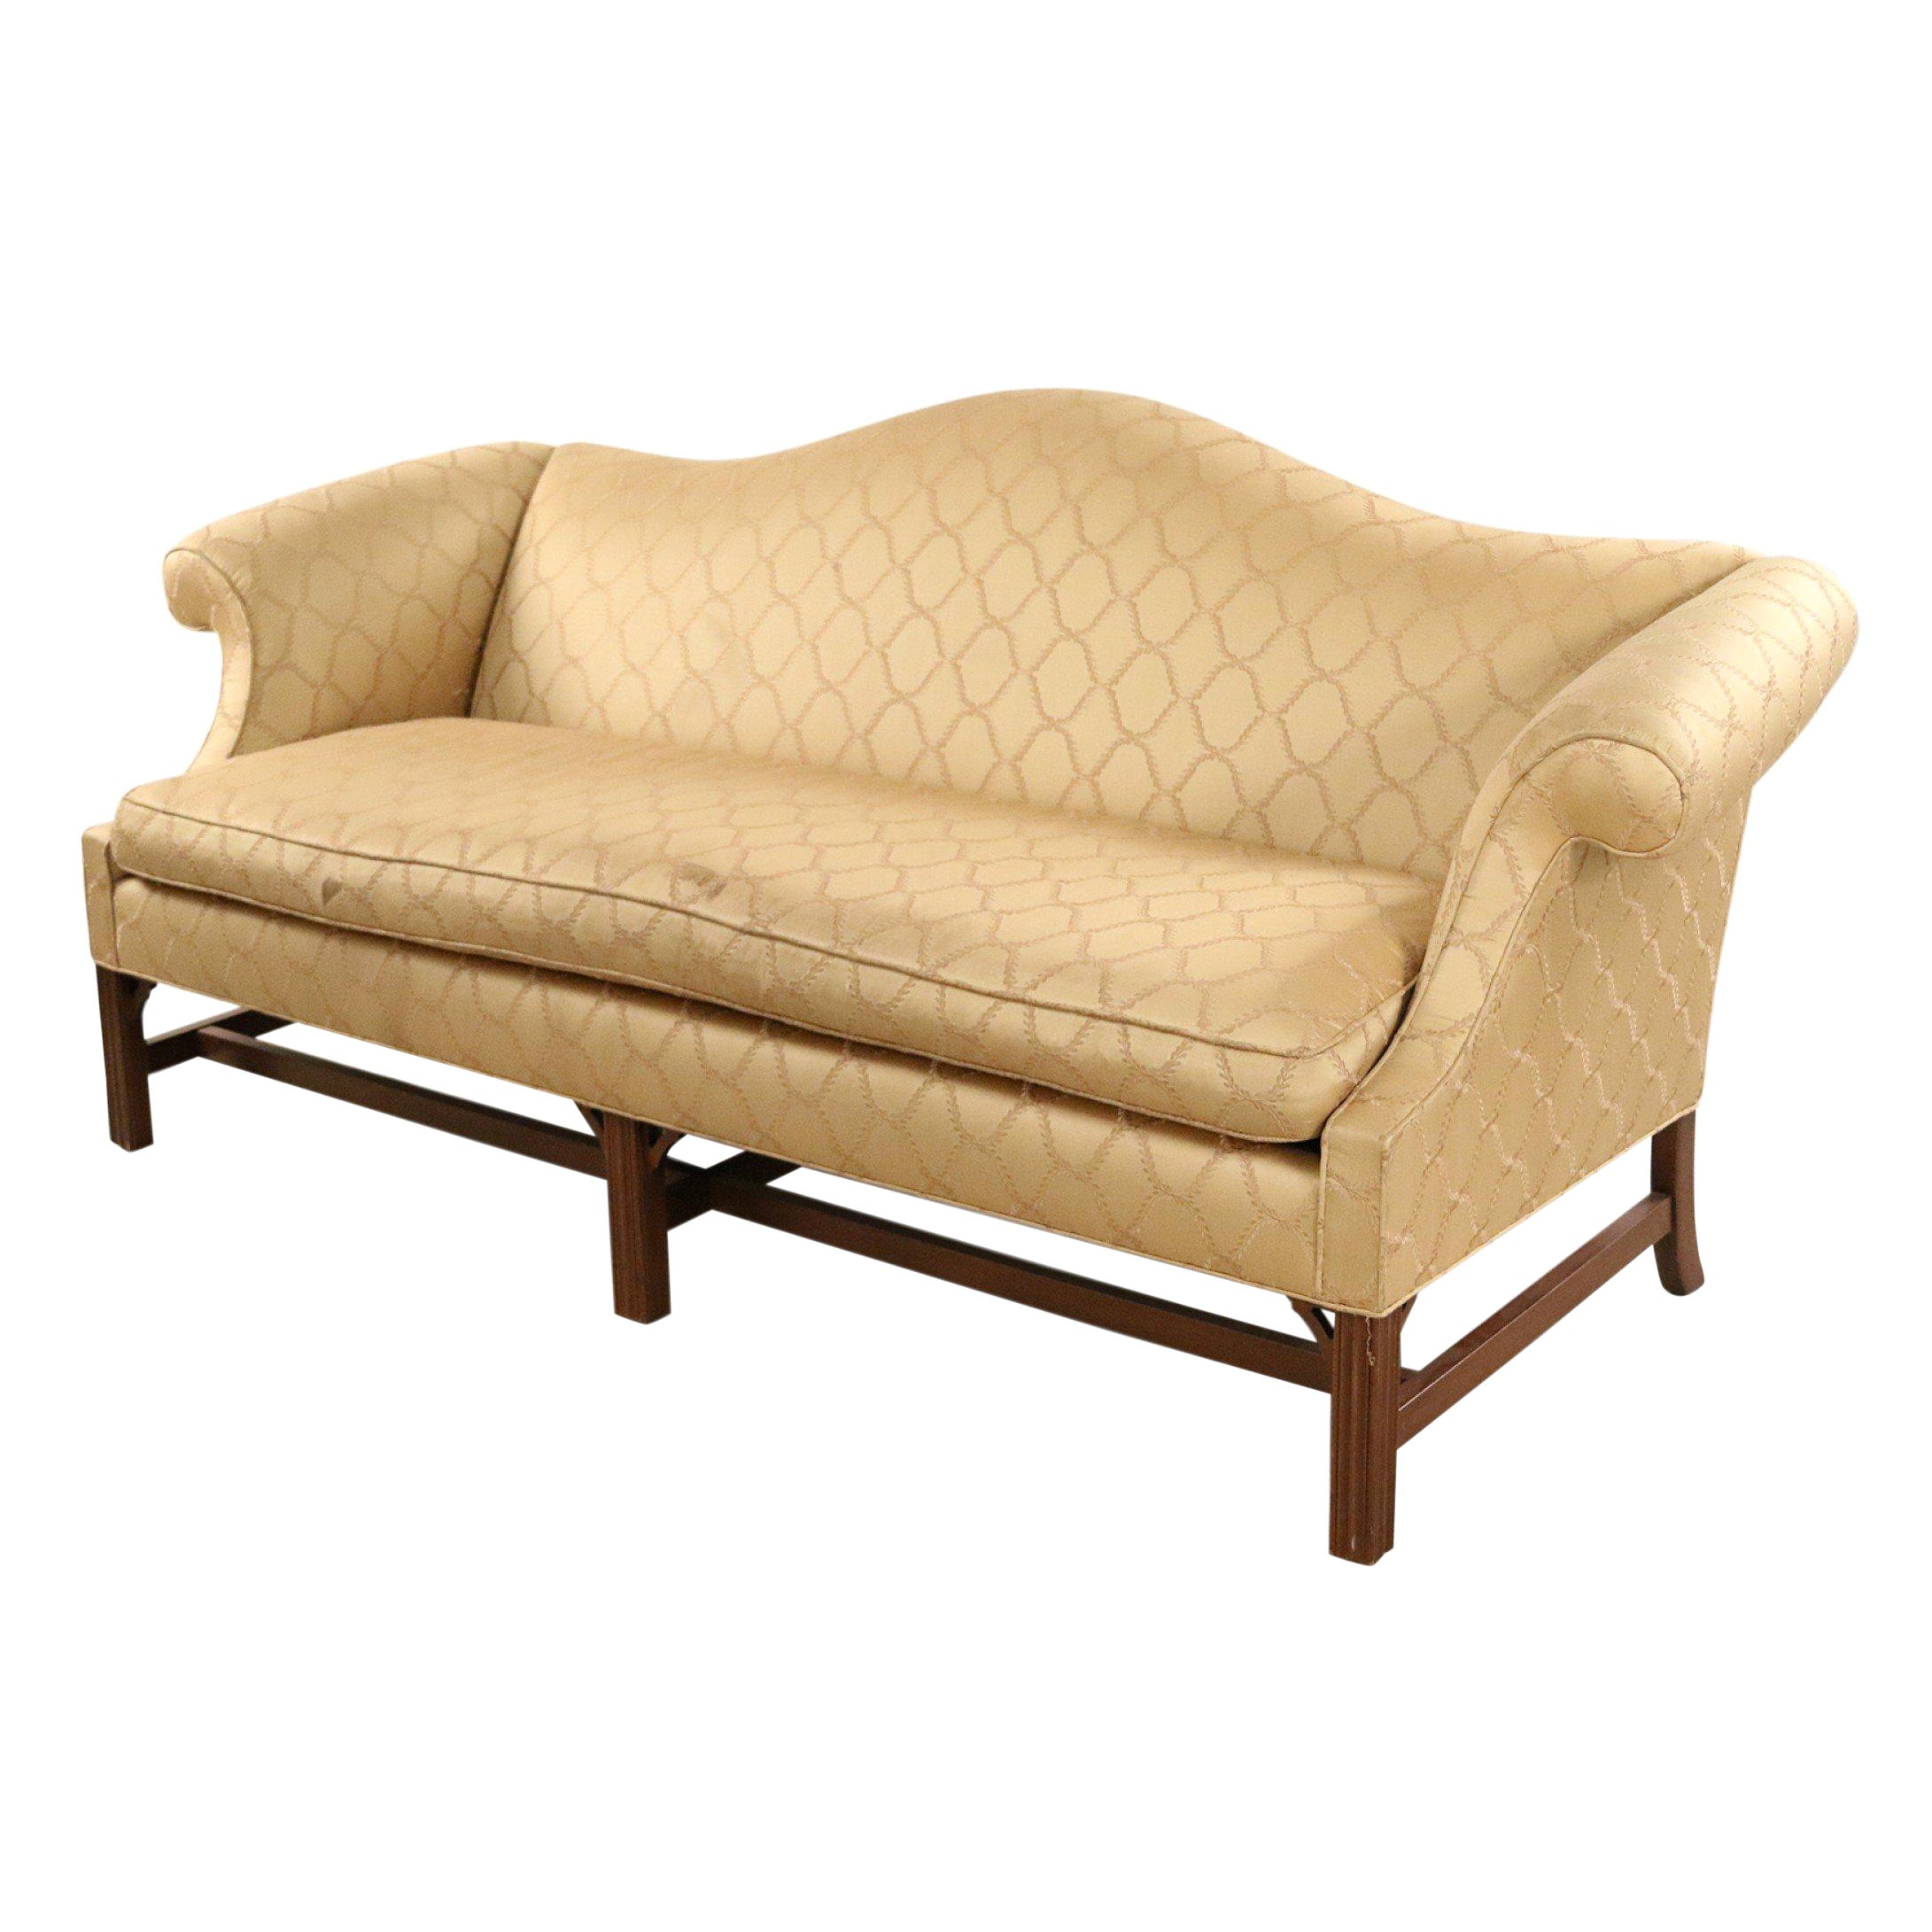 Camel Back Gold Damask Upholstered Sofa